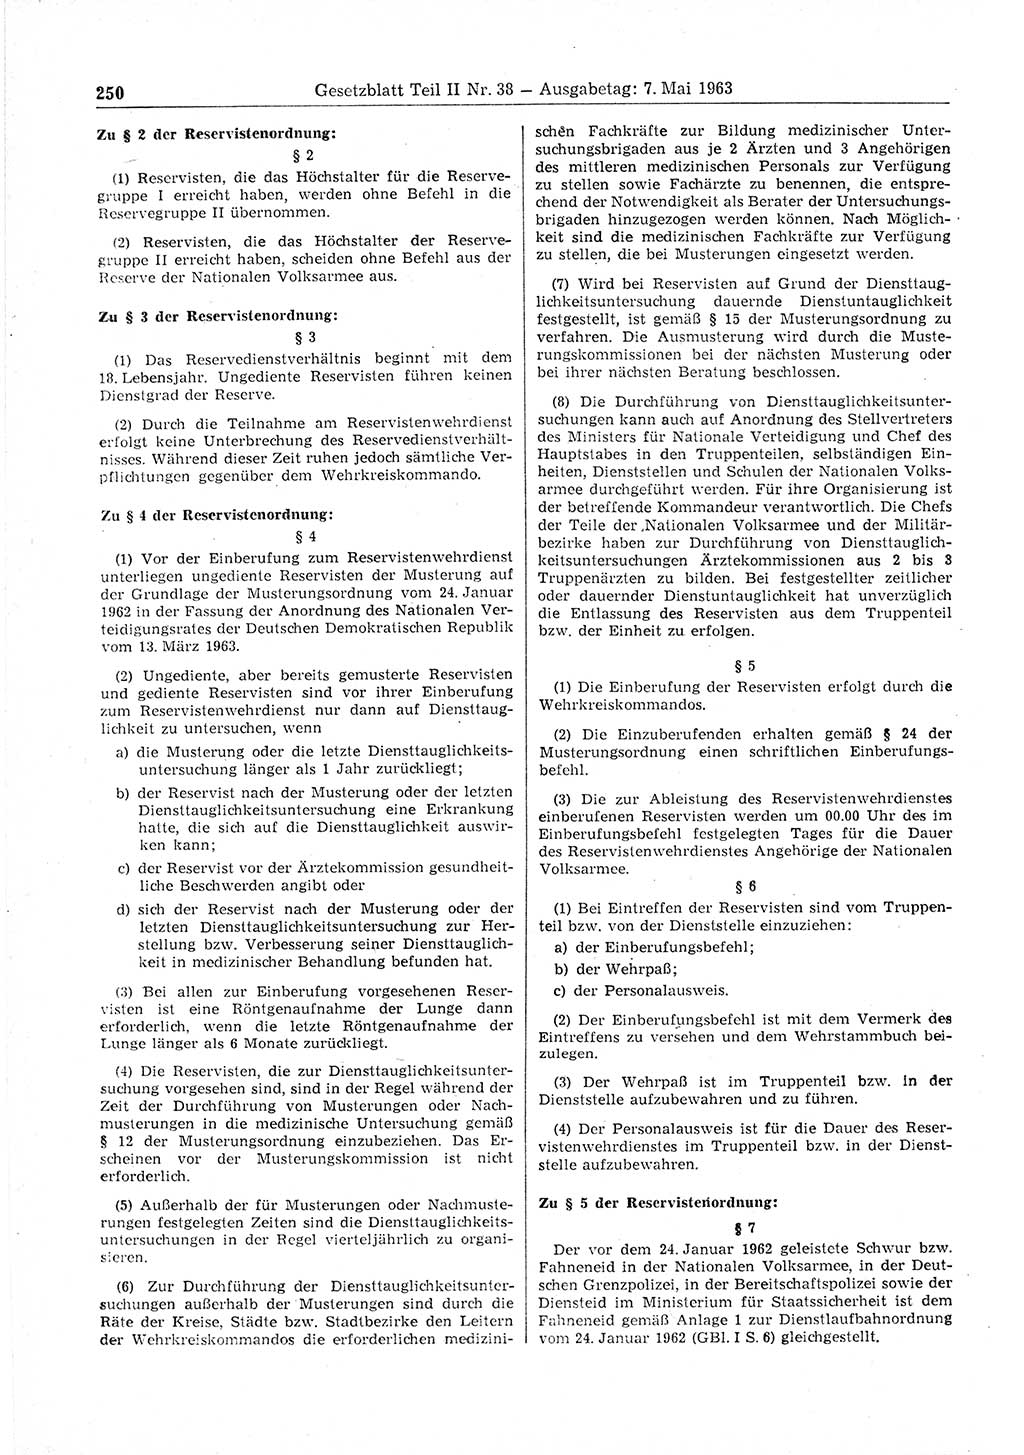 Gesetzblatt (GBl.) der Deutschen Demokratischen Republik (DDR) Teil ⅠⅠ 1963, Seite 250 (GBl. DDR ⅠⅠ 1963, S. 250)